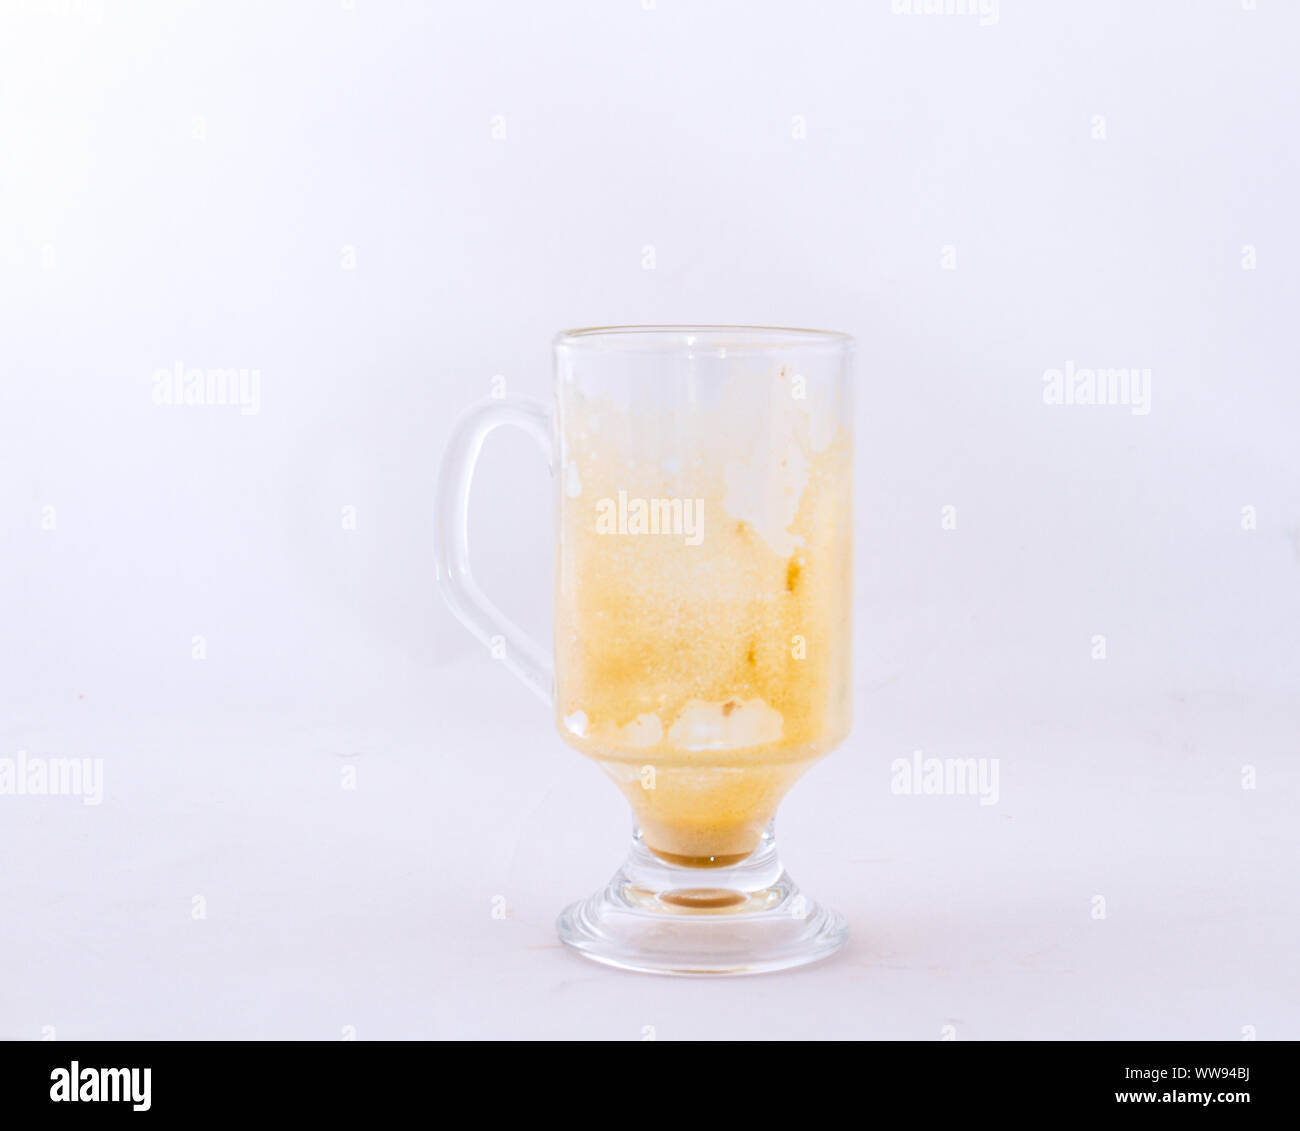 Ein transparentes Glas Kaffeetasse auf eine weiße Fläche Bild mit Kopie Raum im Querformat isoliert Stockfoto